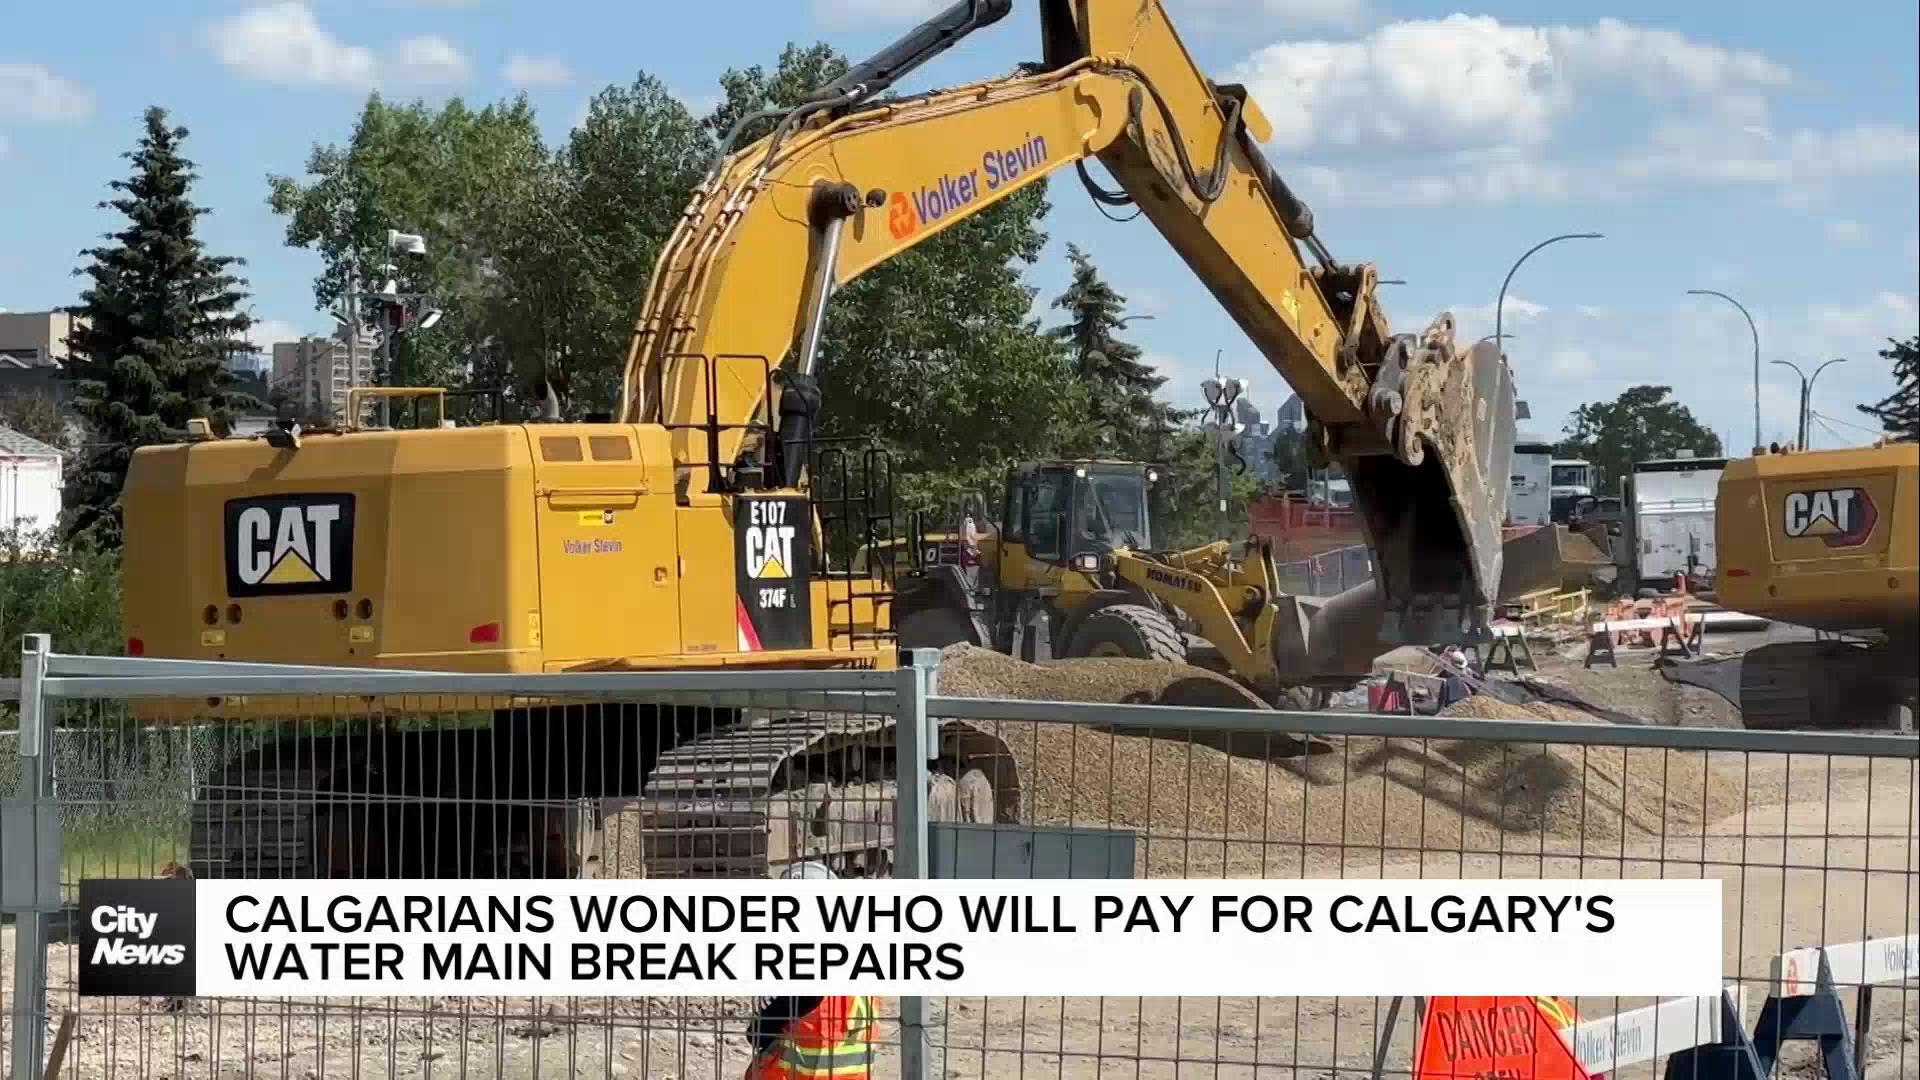 Calgarians wonder who will pay for Calgary's water main break repairs